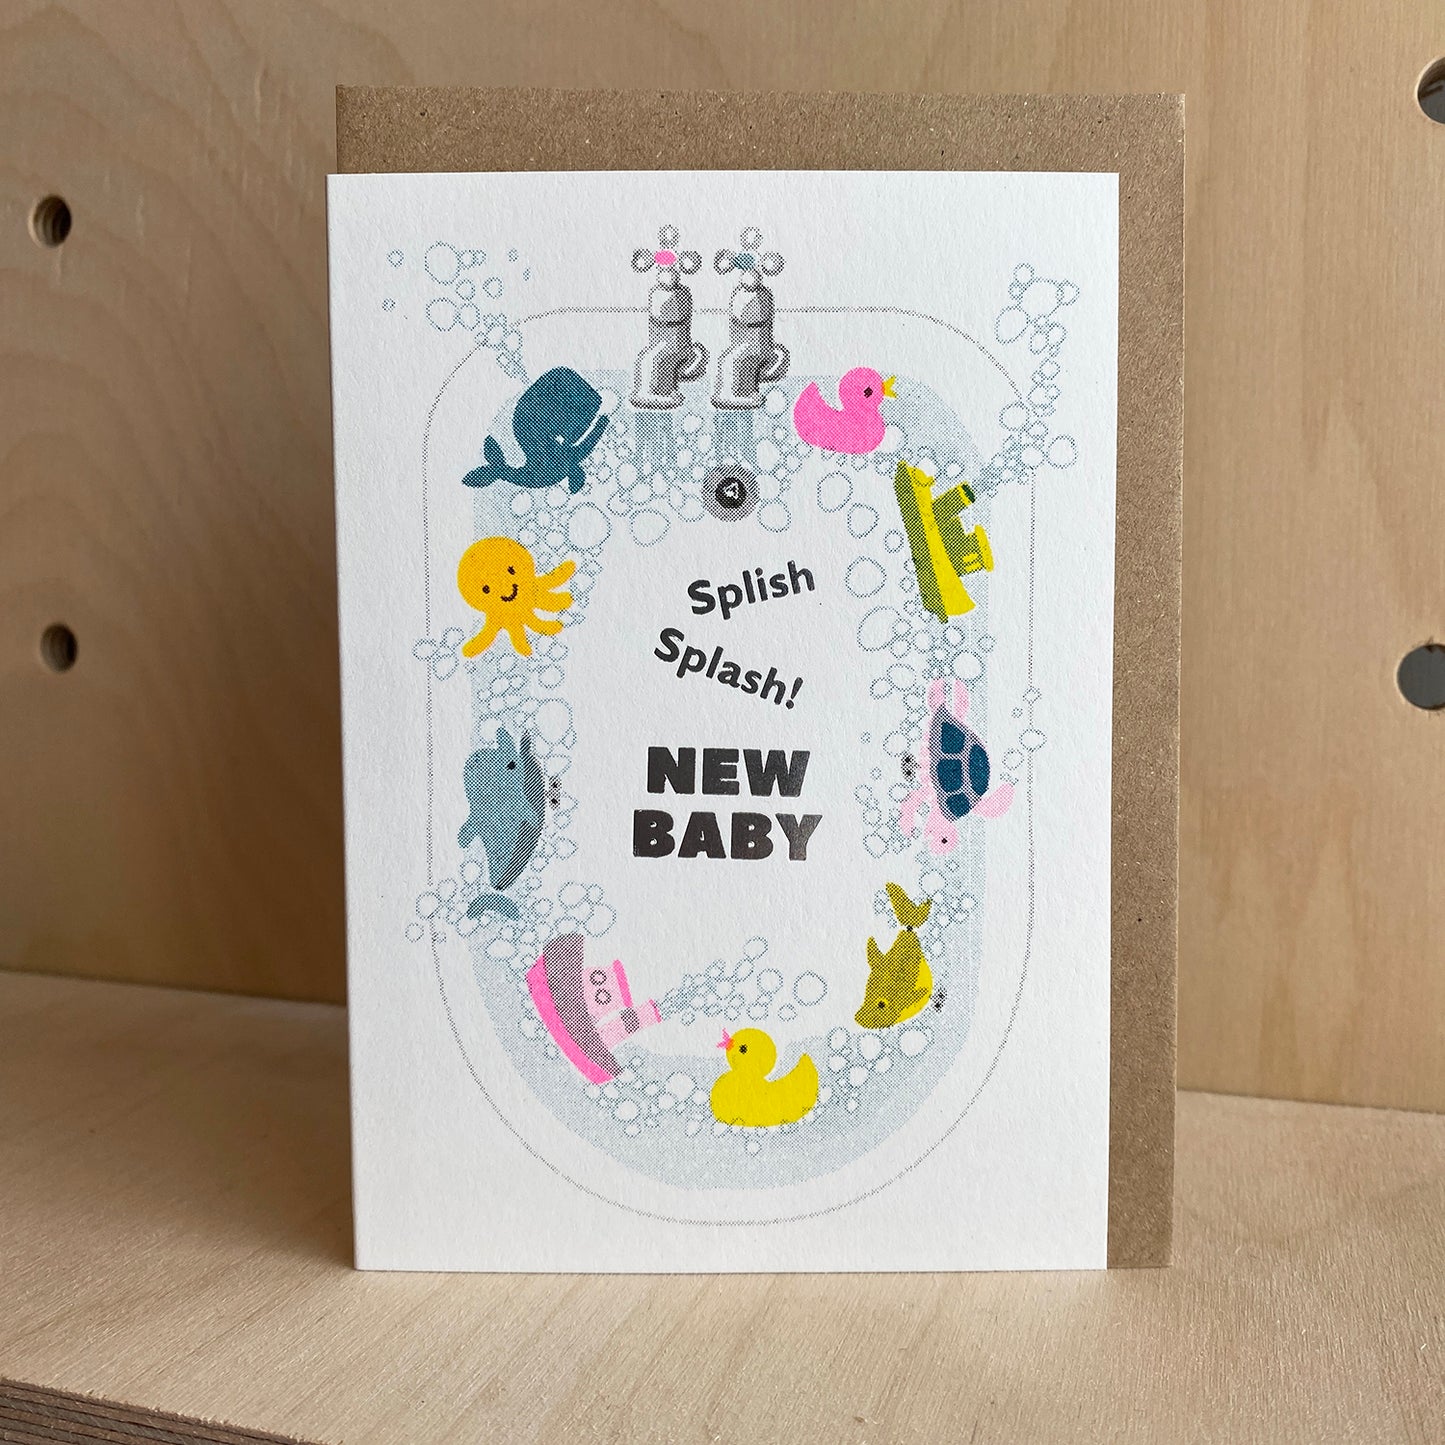 Splish Splash - New Baby Greeting Card